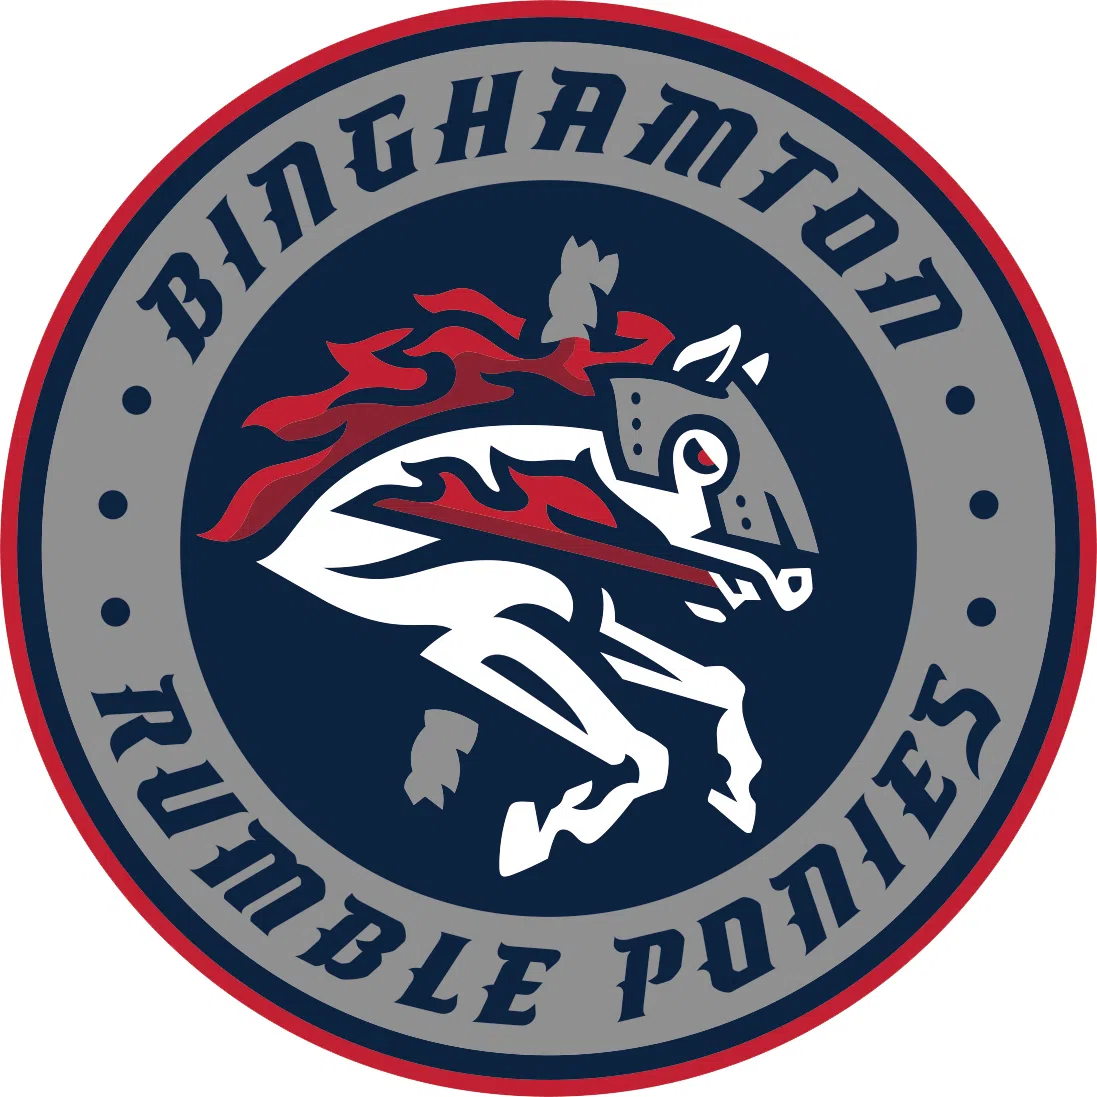 Binghamton Rumble Ponies